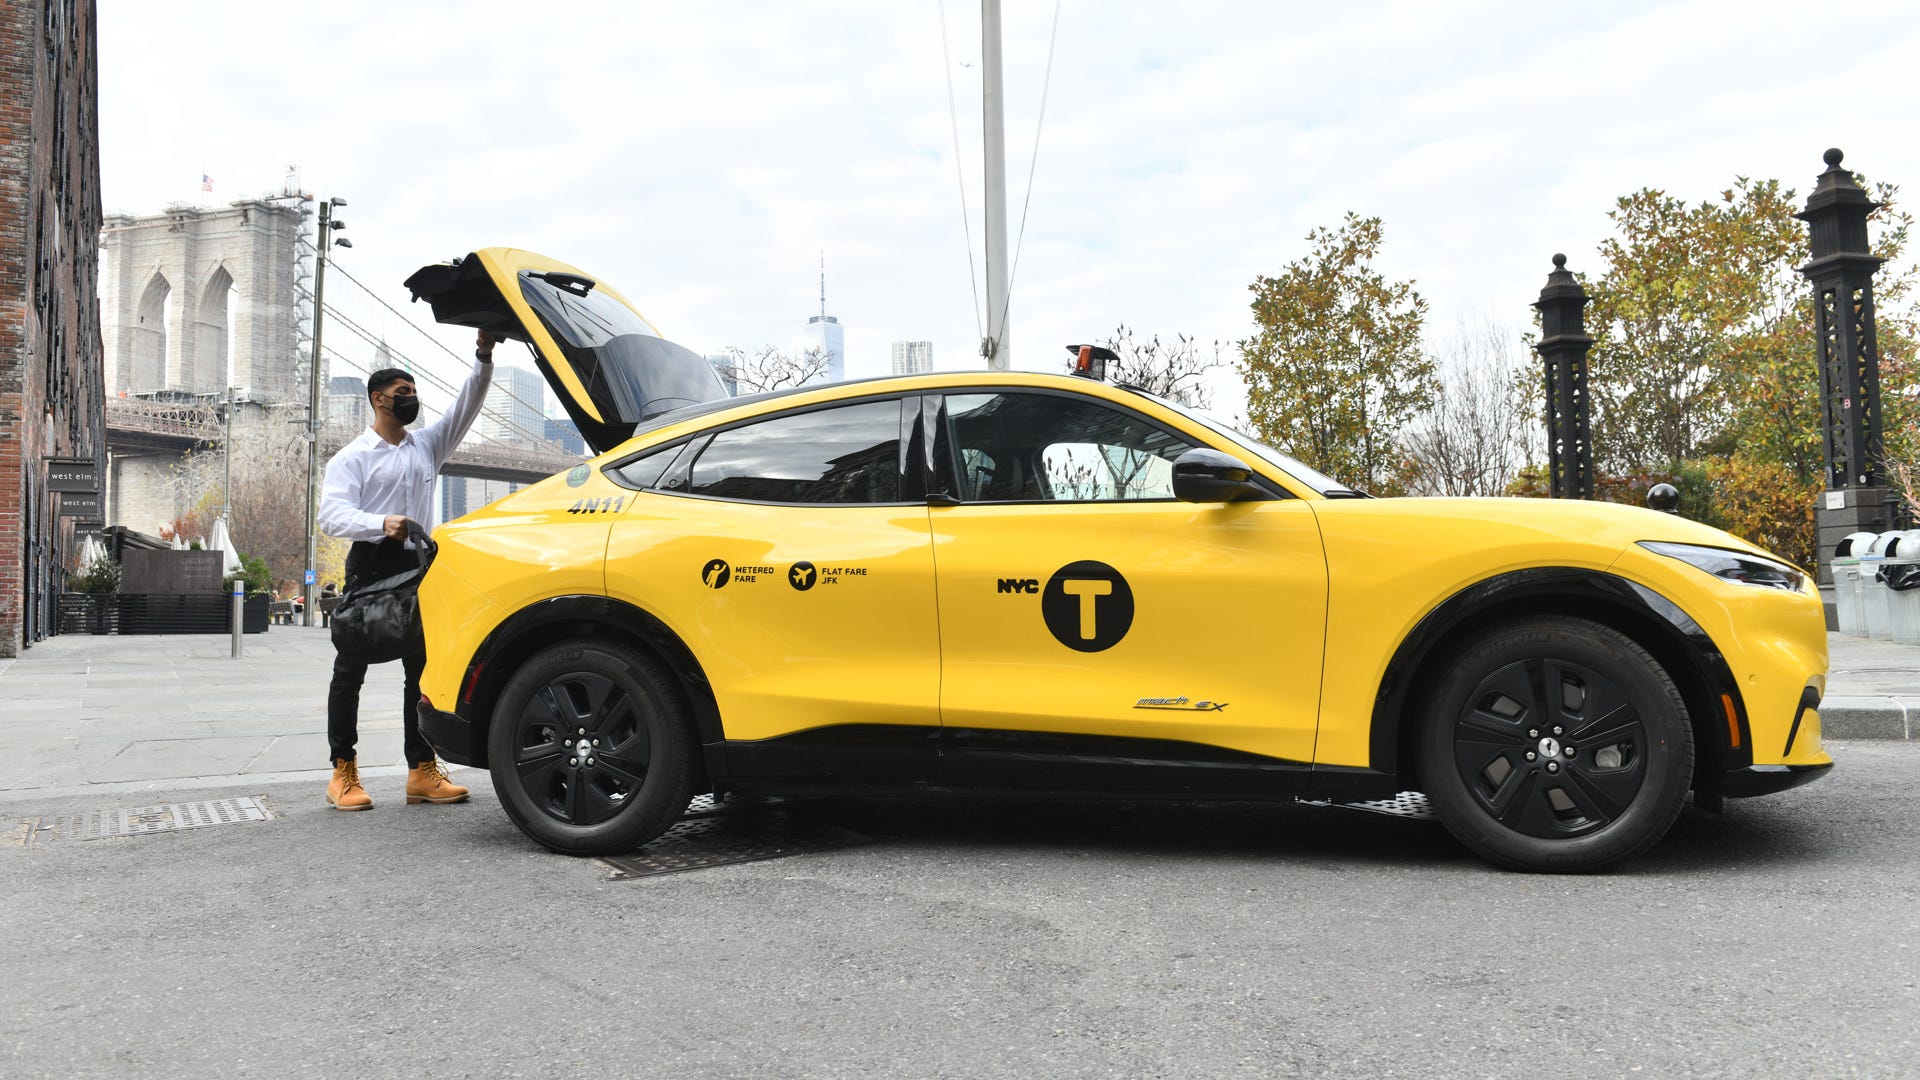 Glöm Uber: Du kan ta en Mustang Mach-E-taxi i NYC